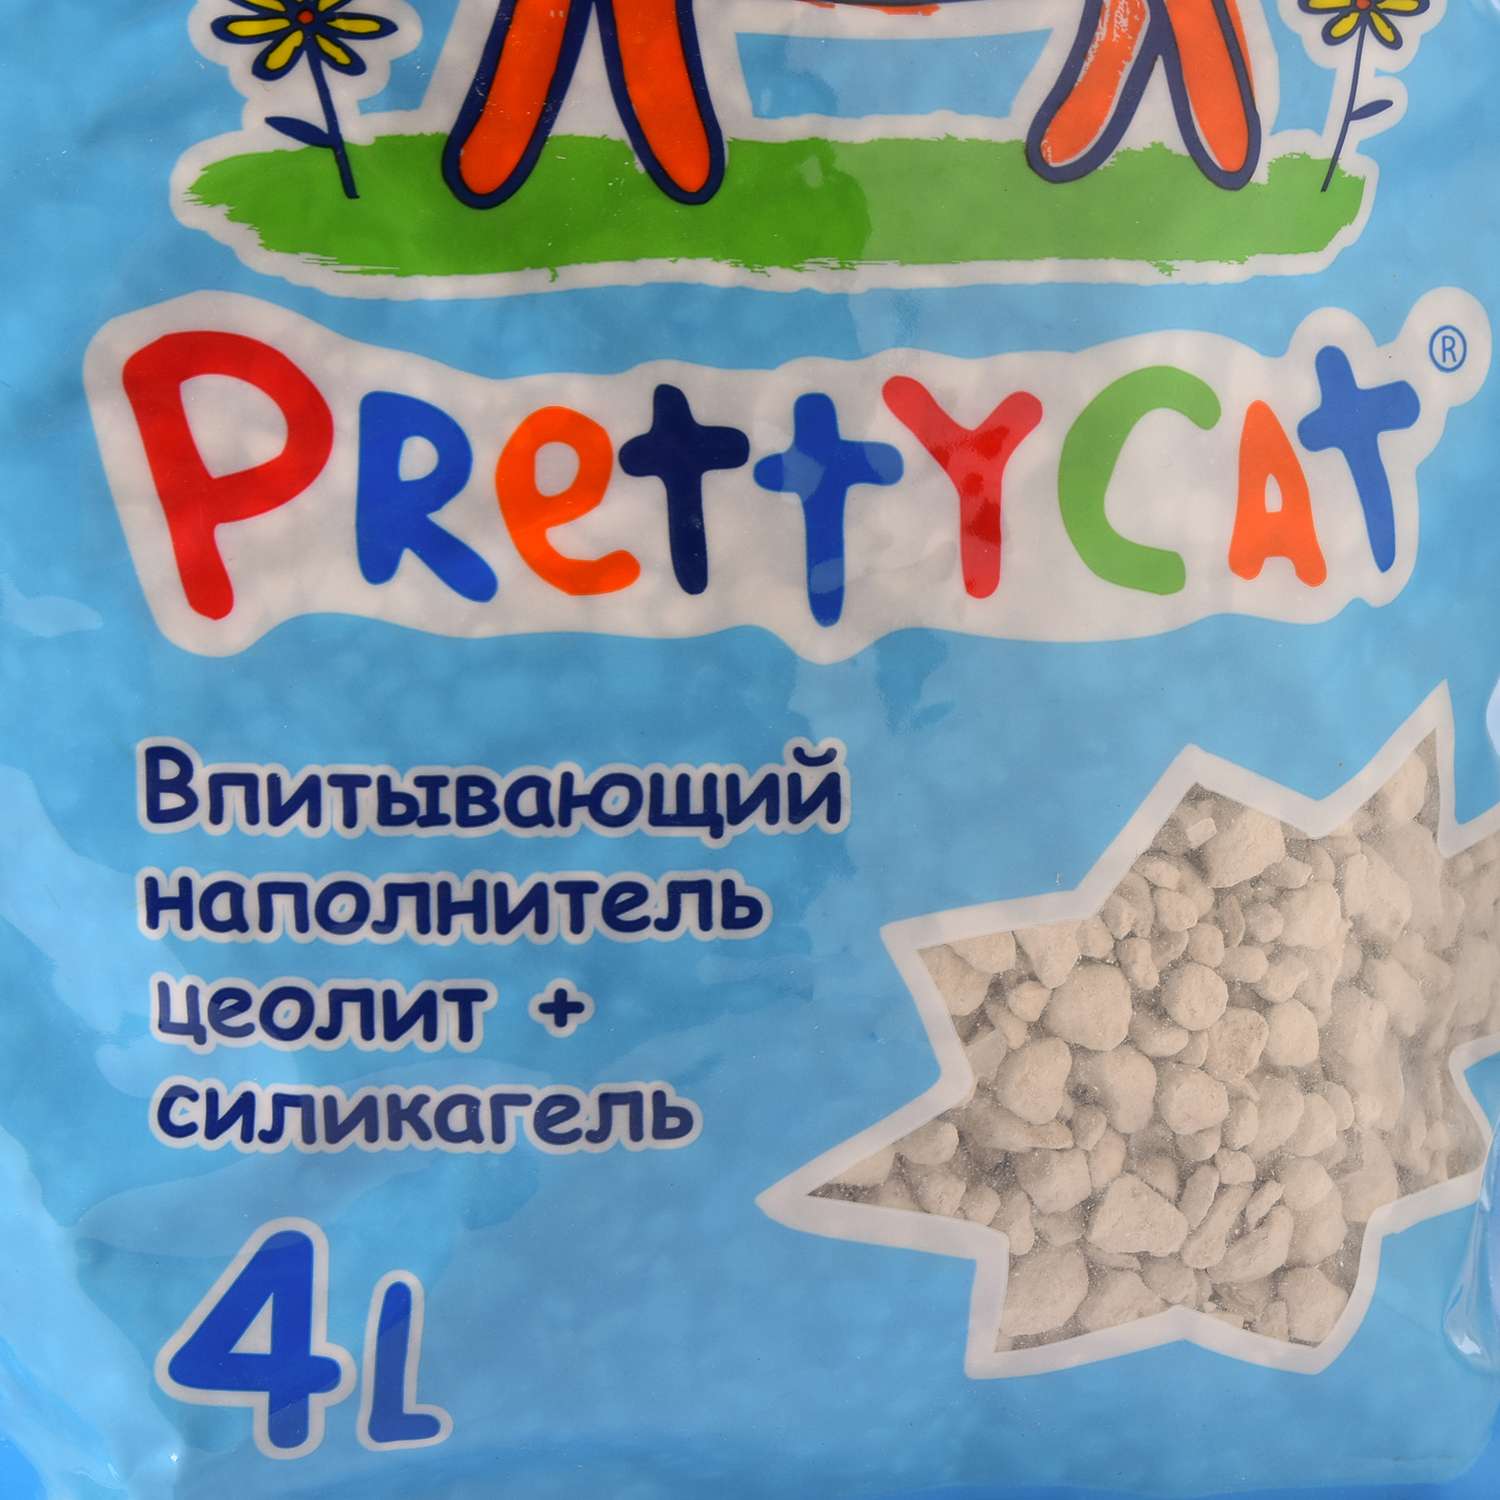 Наполнитель для кошек PrettyCat Aroma Fruit глиняный впитывающий с део-кристаллами 2кг - фото 5